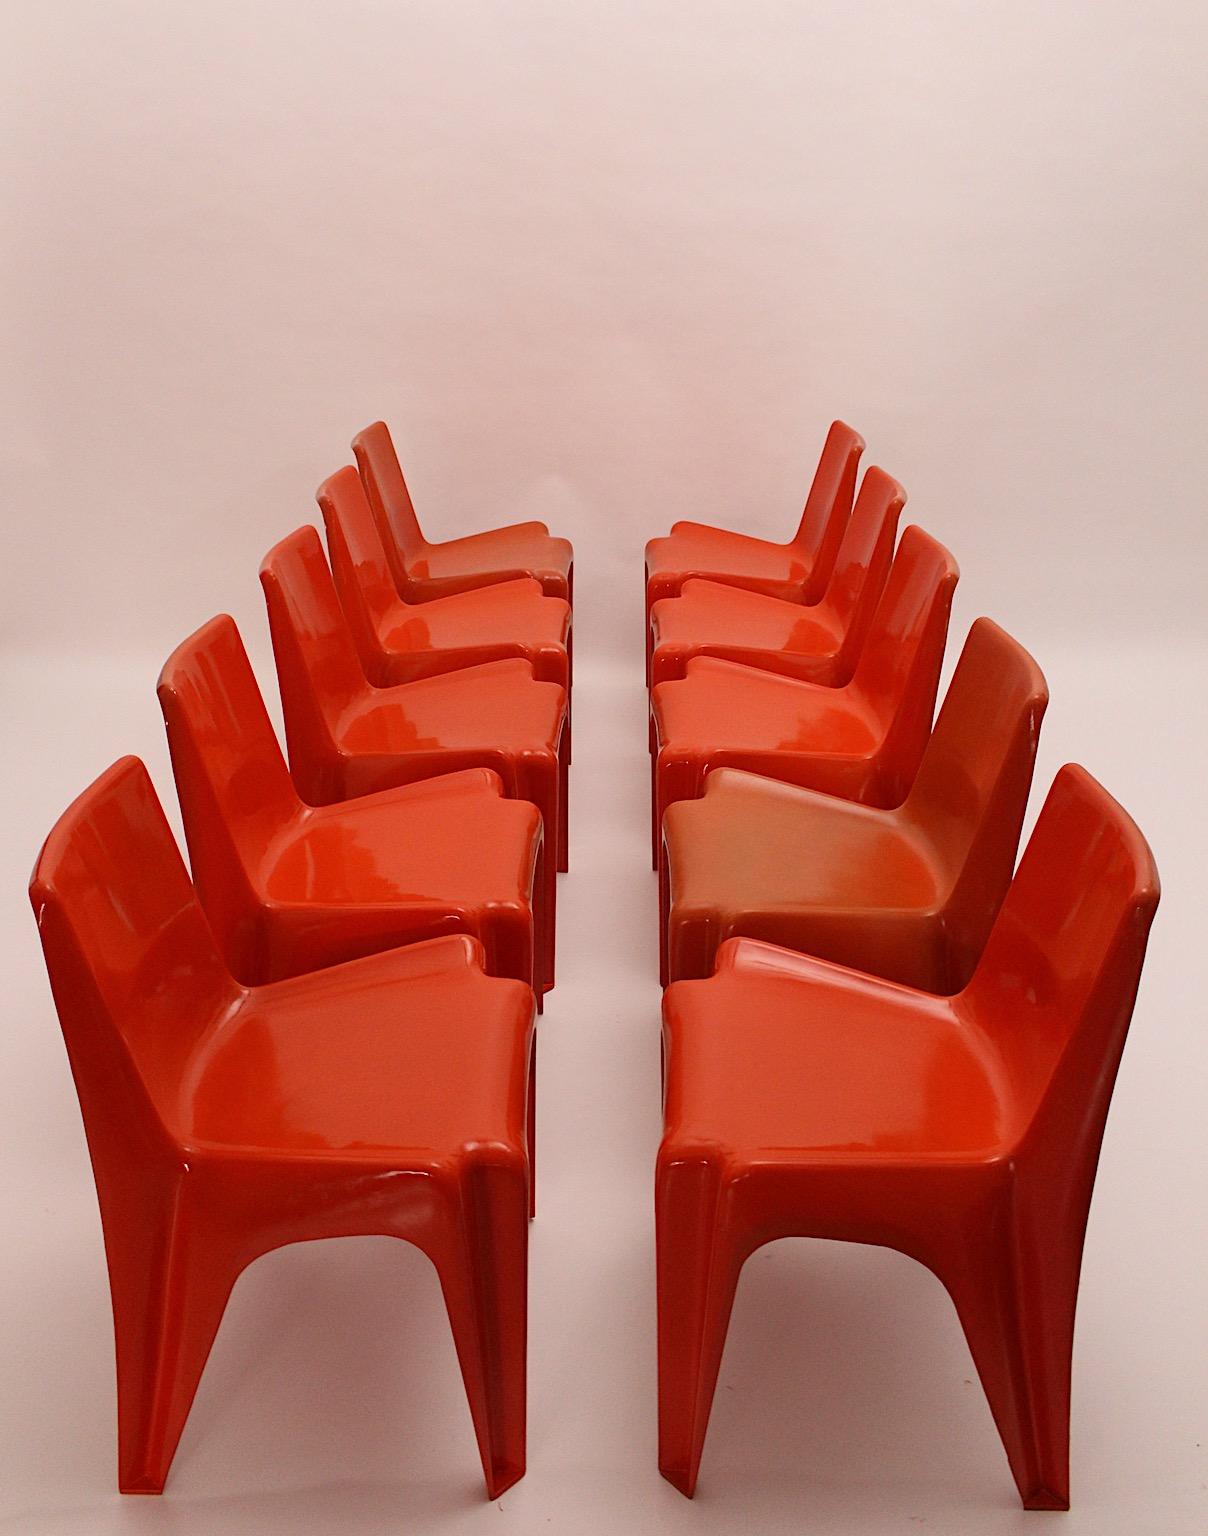 Space Age vintage zehn Esszimmerstühle oder Stühle aus Kunststoff in kirschrotem Farbton von Helmut Baetzner Bofinger 1964 Deutschland.
Die Stühle sind auf der Unterseite gestempelt und werden in einem seltenen Satz von zehn Stühlen